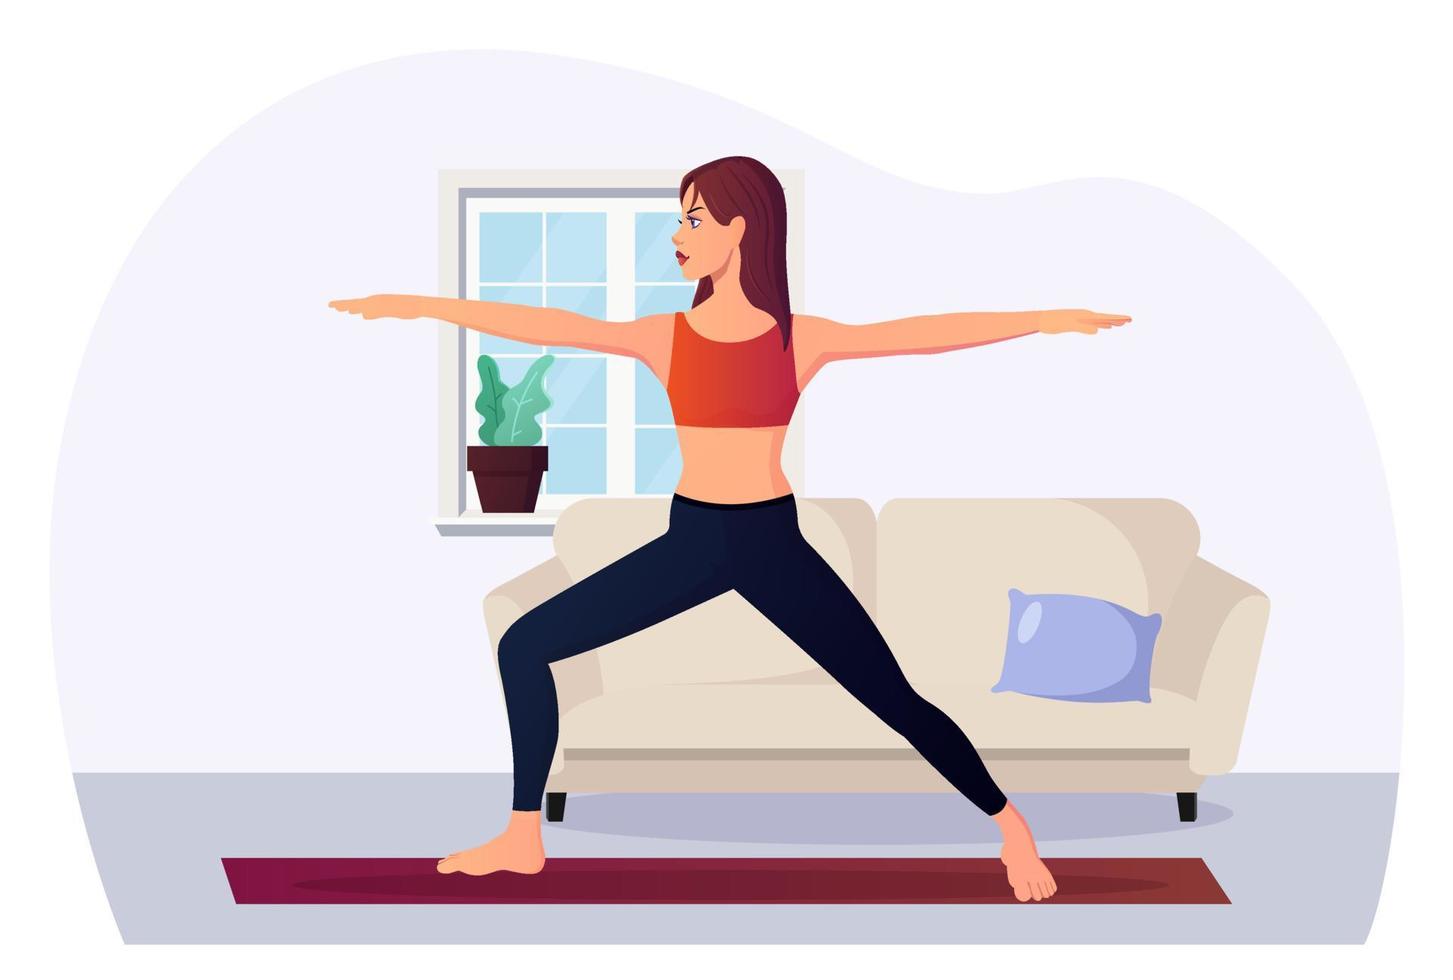 mujer fitness en posición de yoga guerrero 2 en el interior ilustración vectorial premium vector